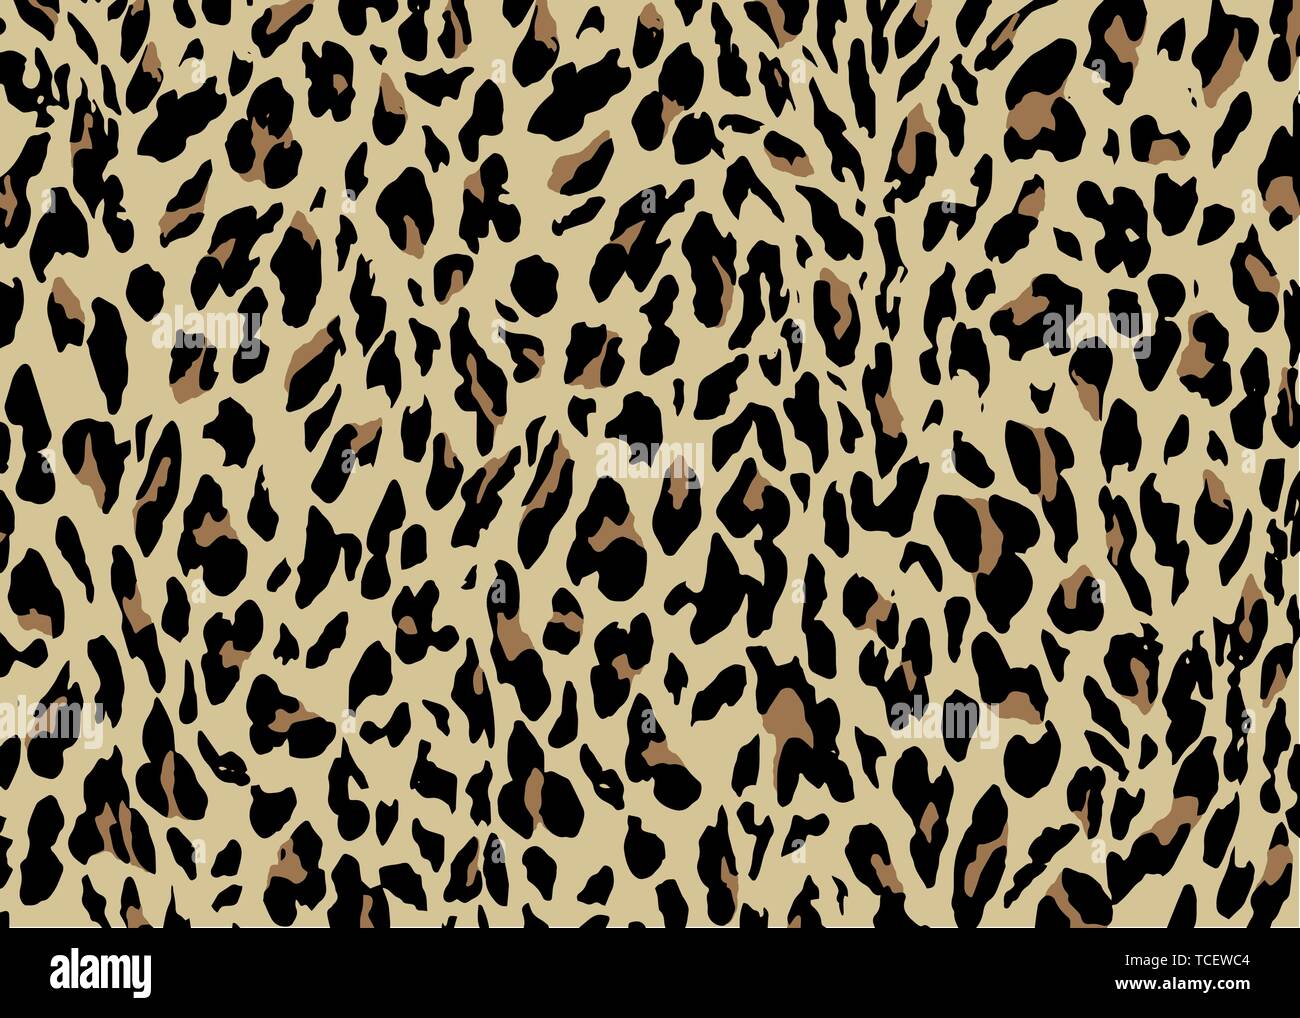 Leopard skin pattern design. Leopard print vector illustration background. Wildlife fur skin design illustration for print, web, home decor, Stock Vector